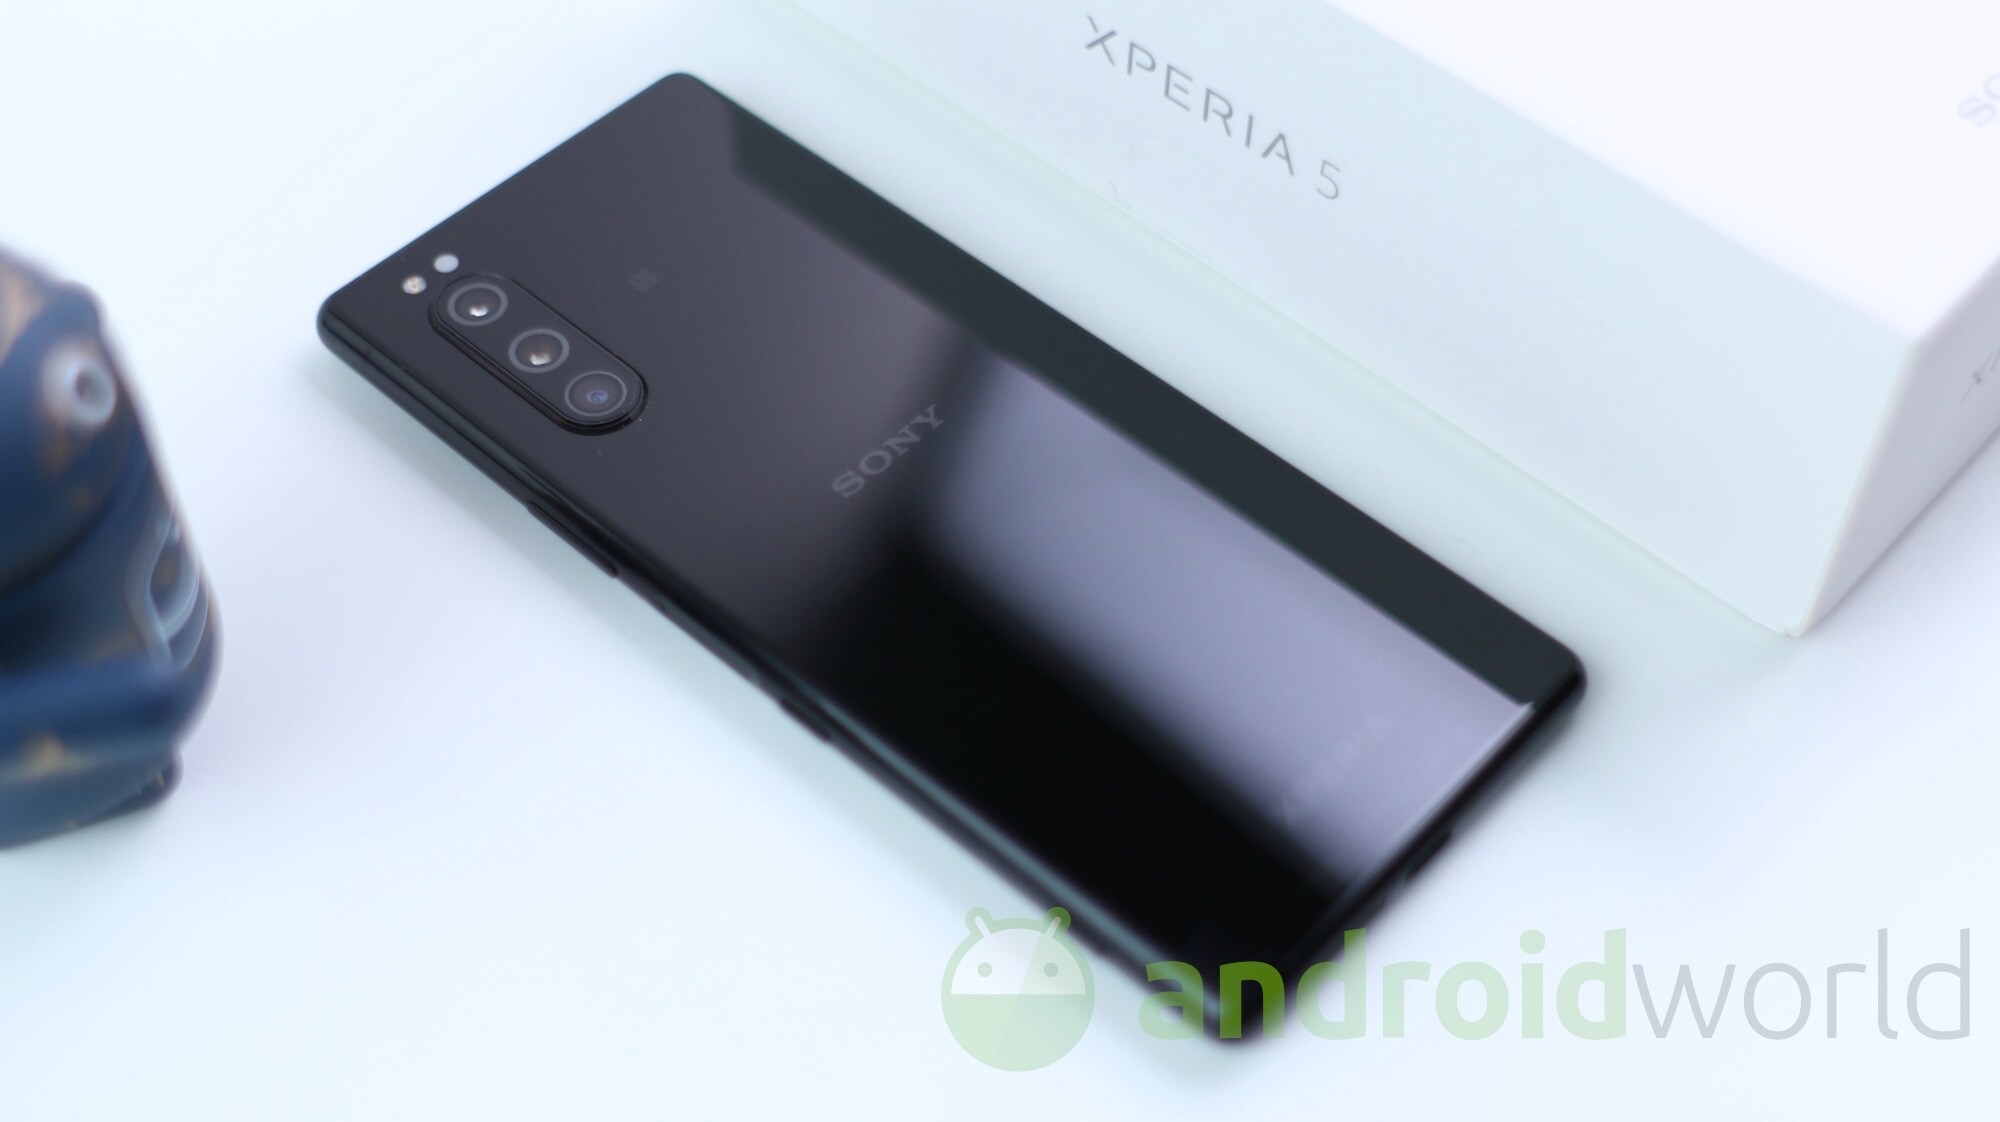 Sony Xperia 5 non brilla per comparto fotografico: per DxOMark scatta peggio di OnePlus 6 (foto)